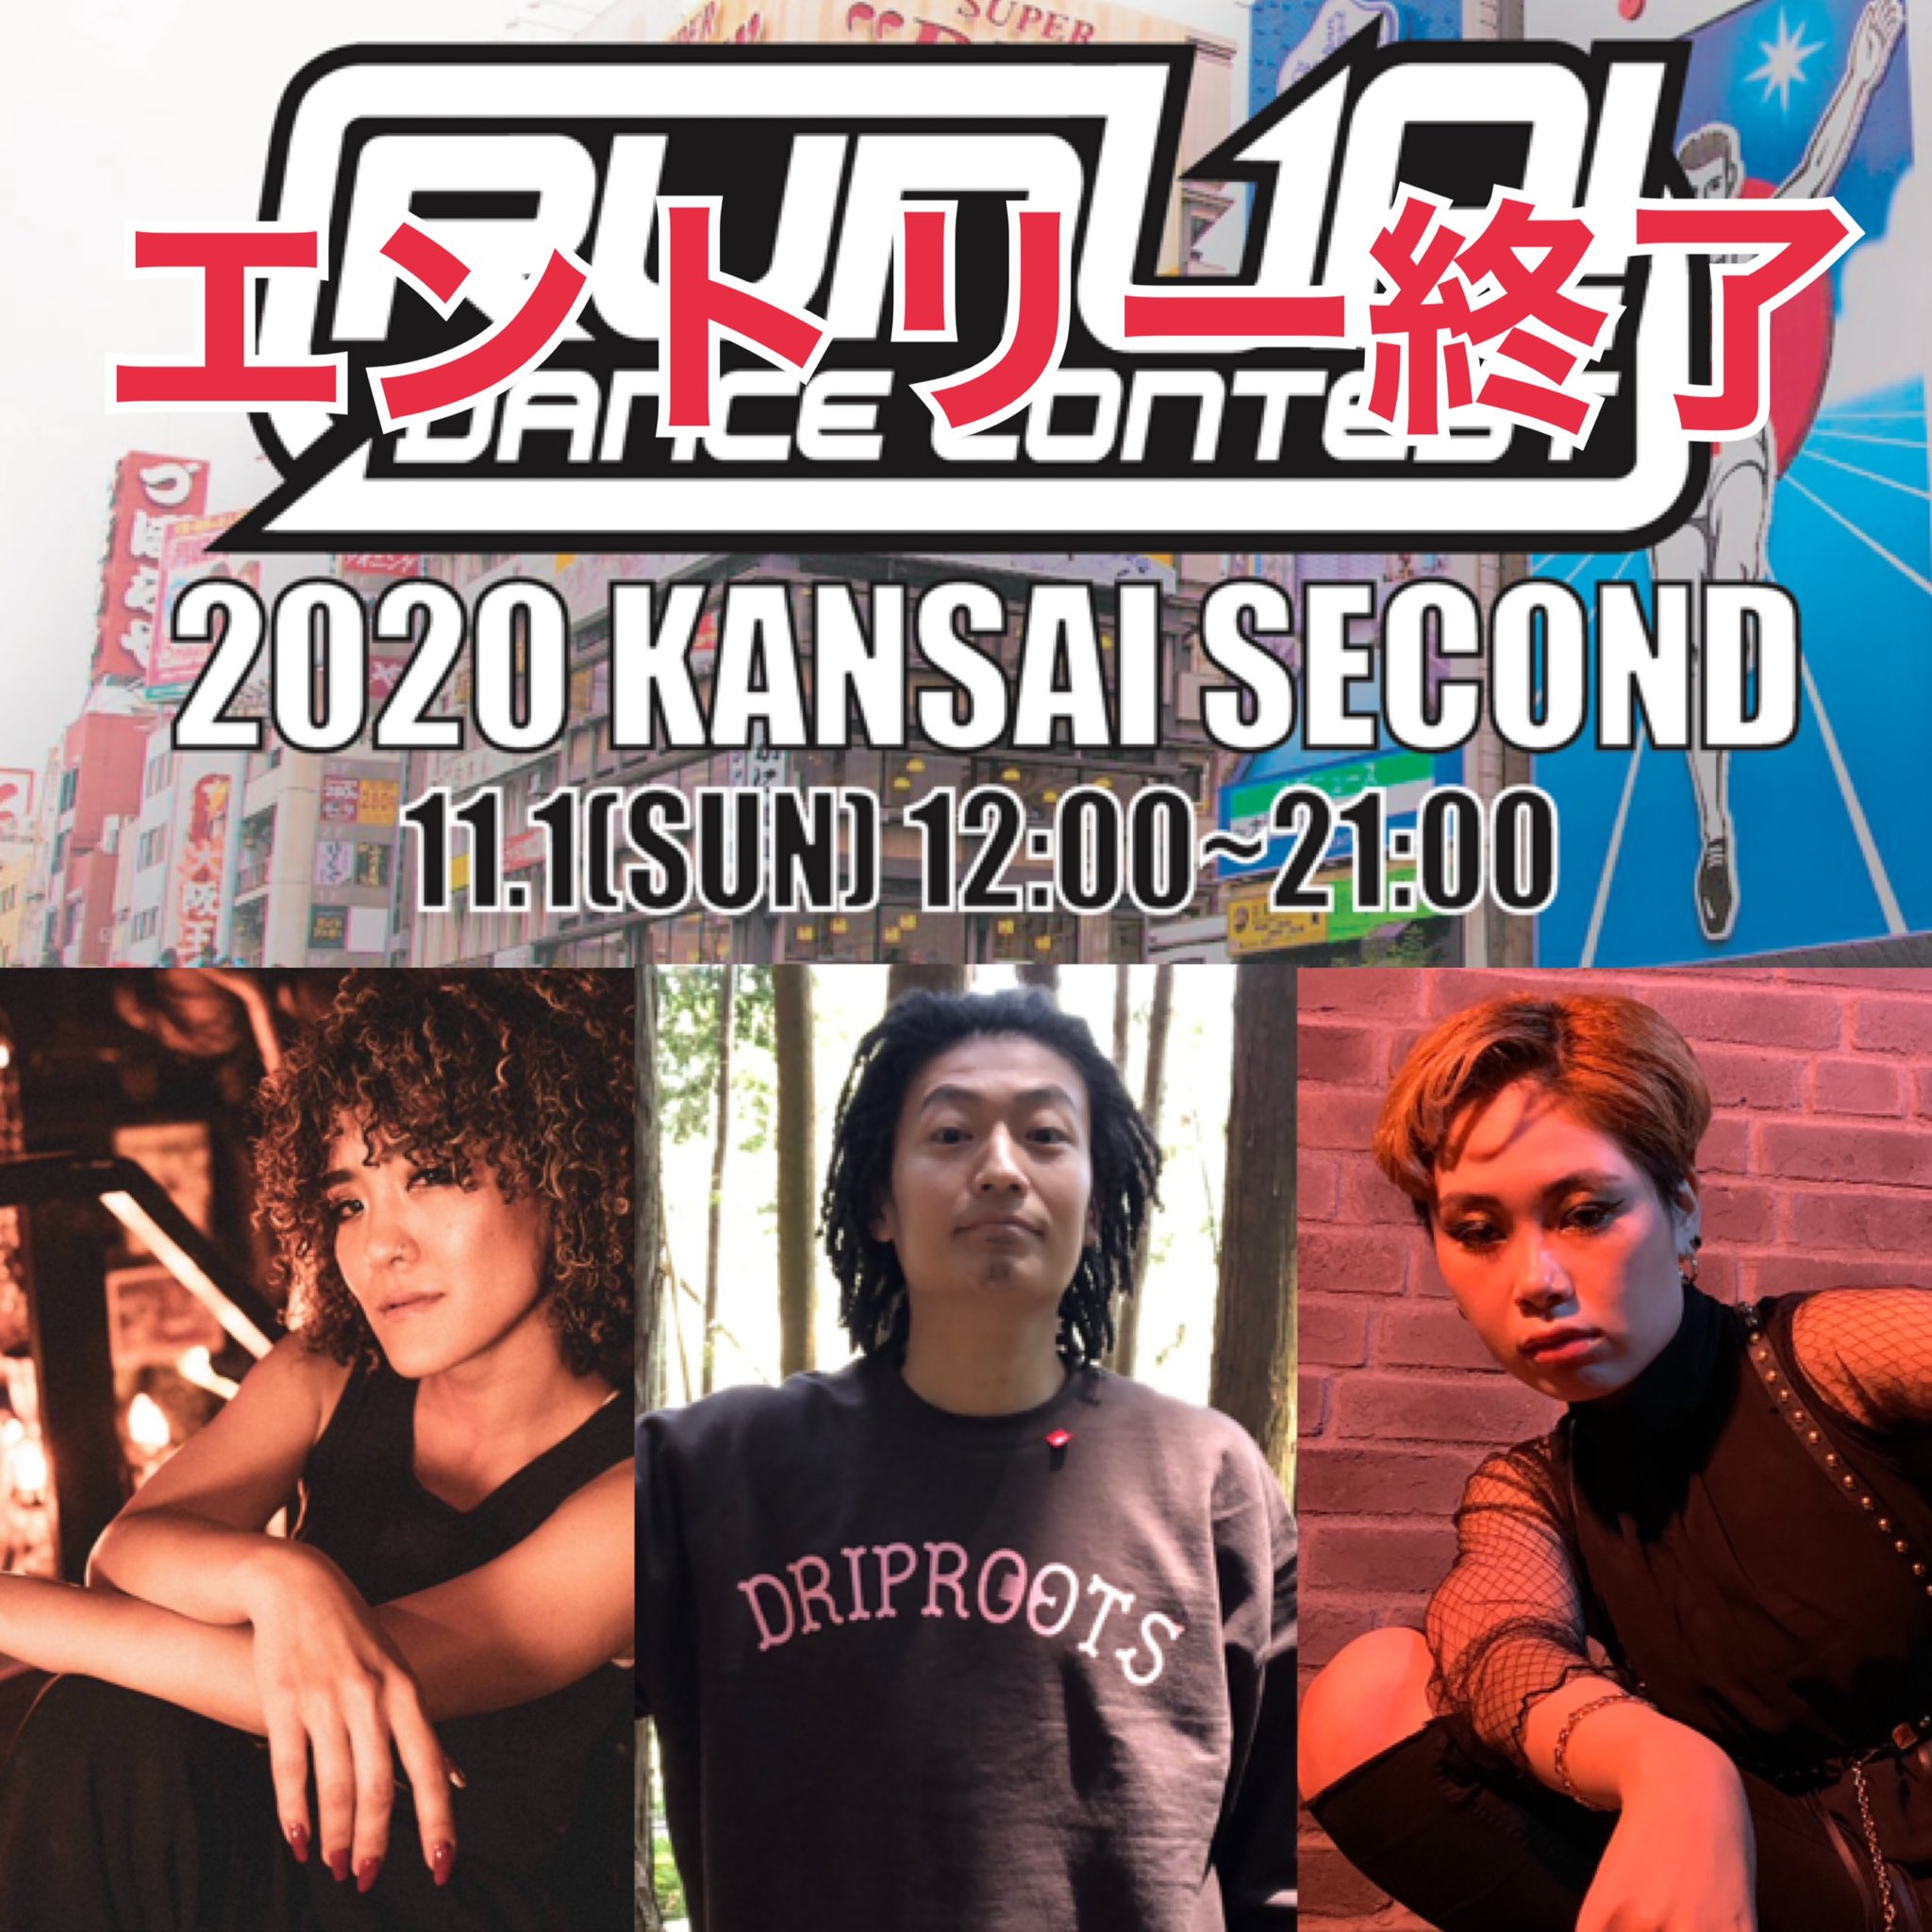 RUN UP DANCE CCONTEST 2020 KANSAI SECOND